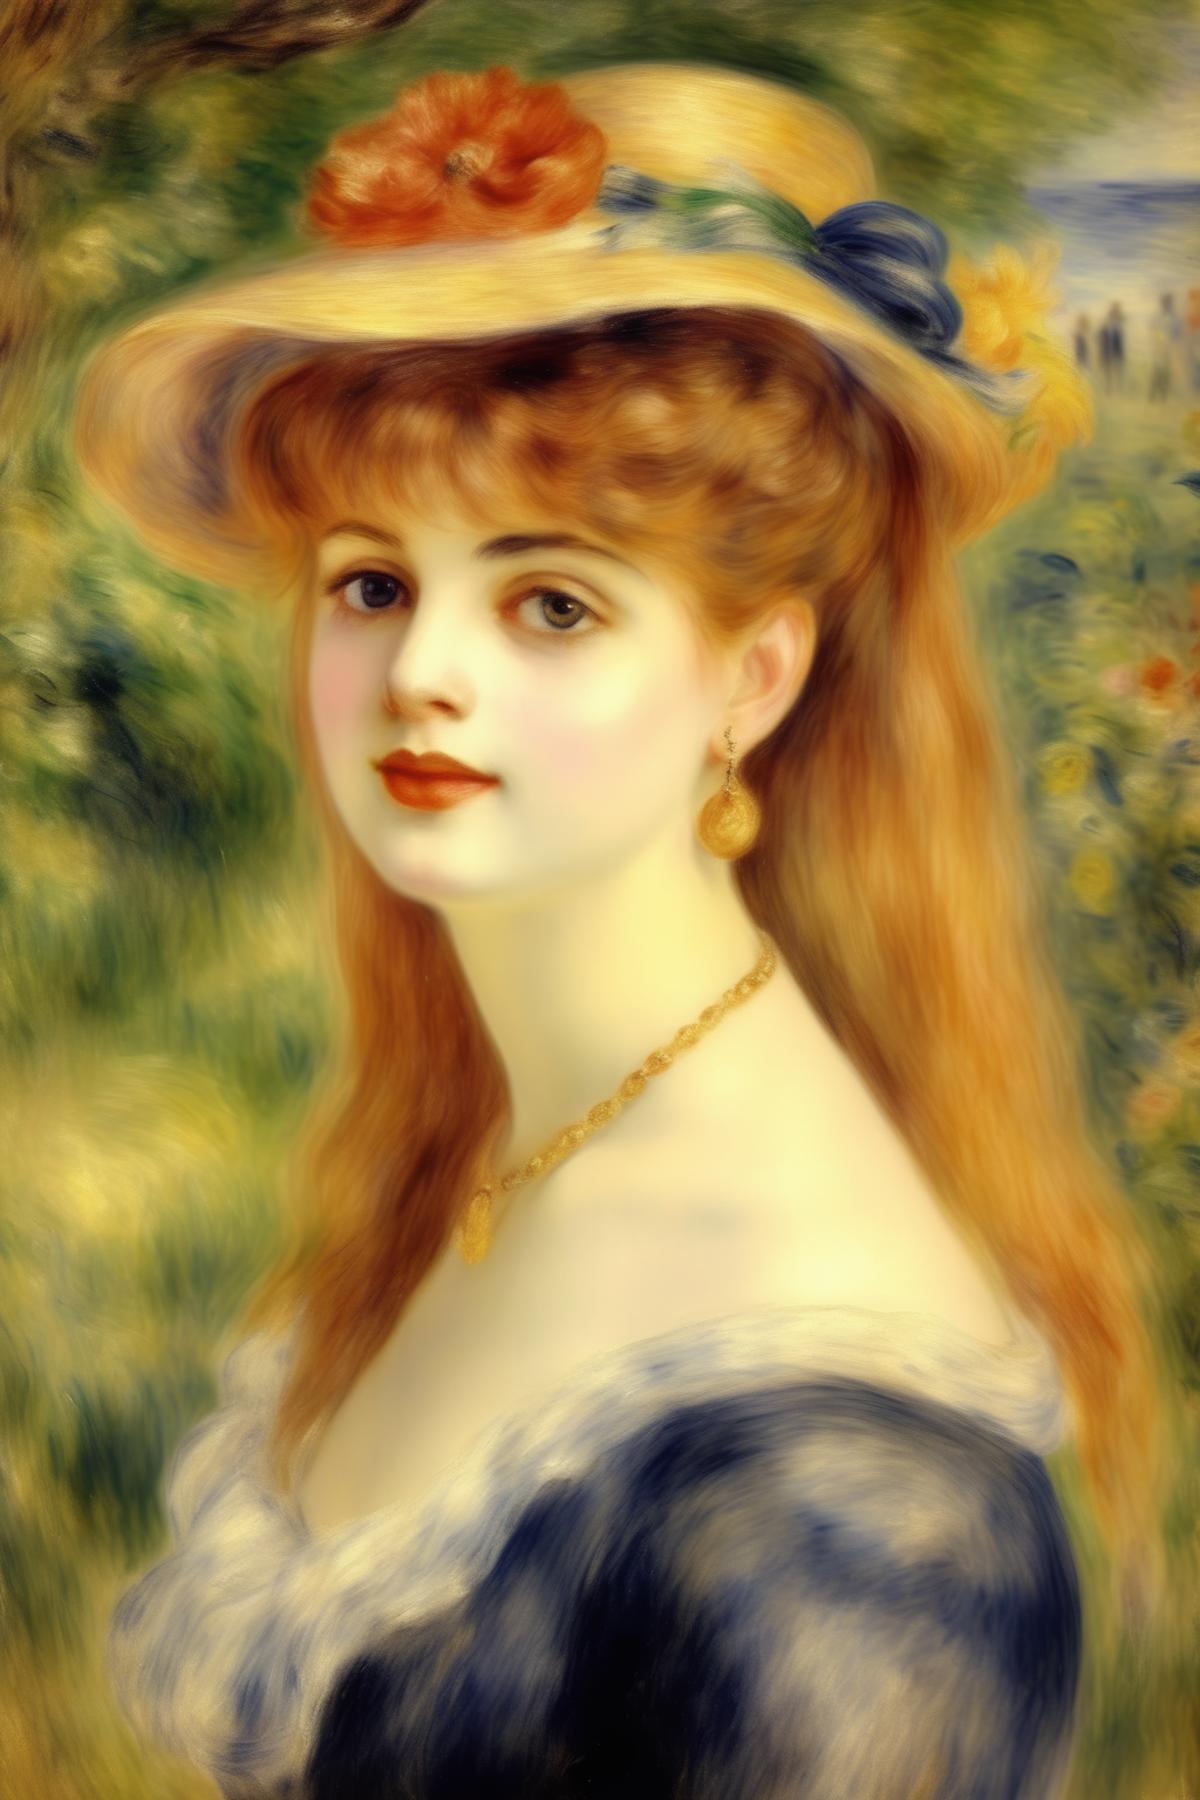 Pierre Auguste Renoir Style image by Kappa_Neuro